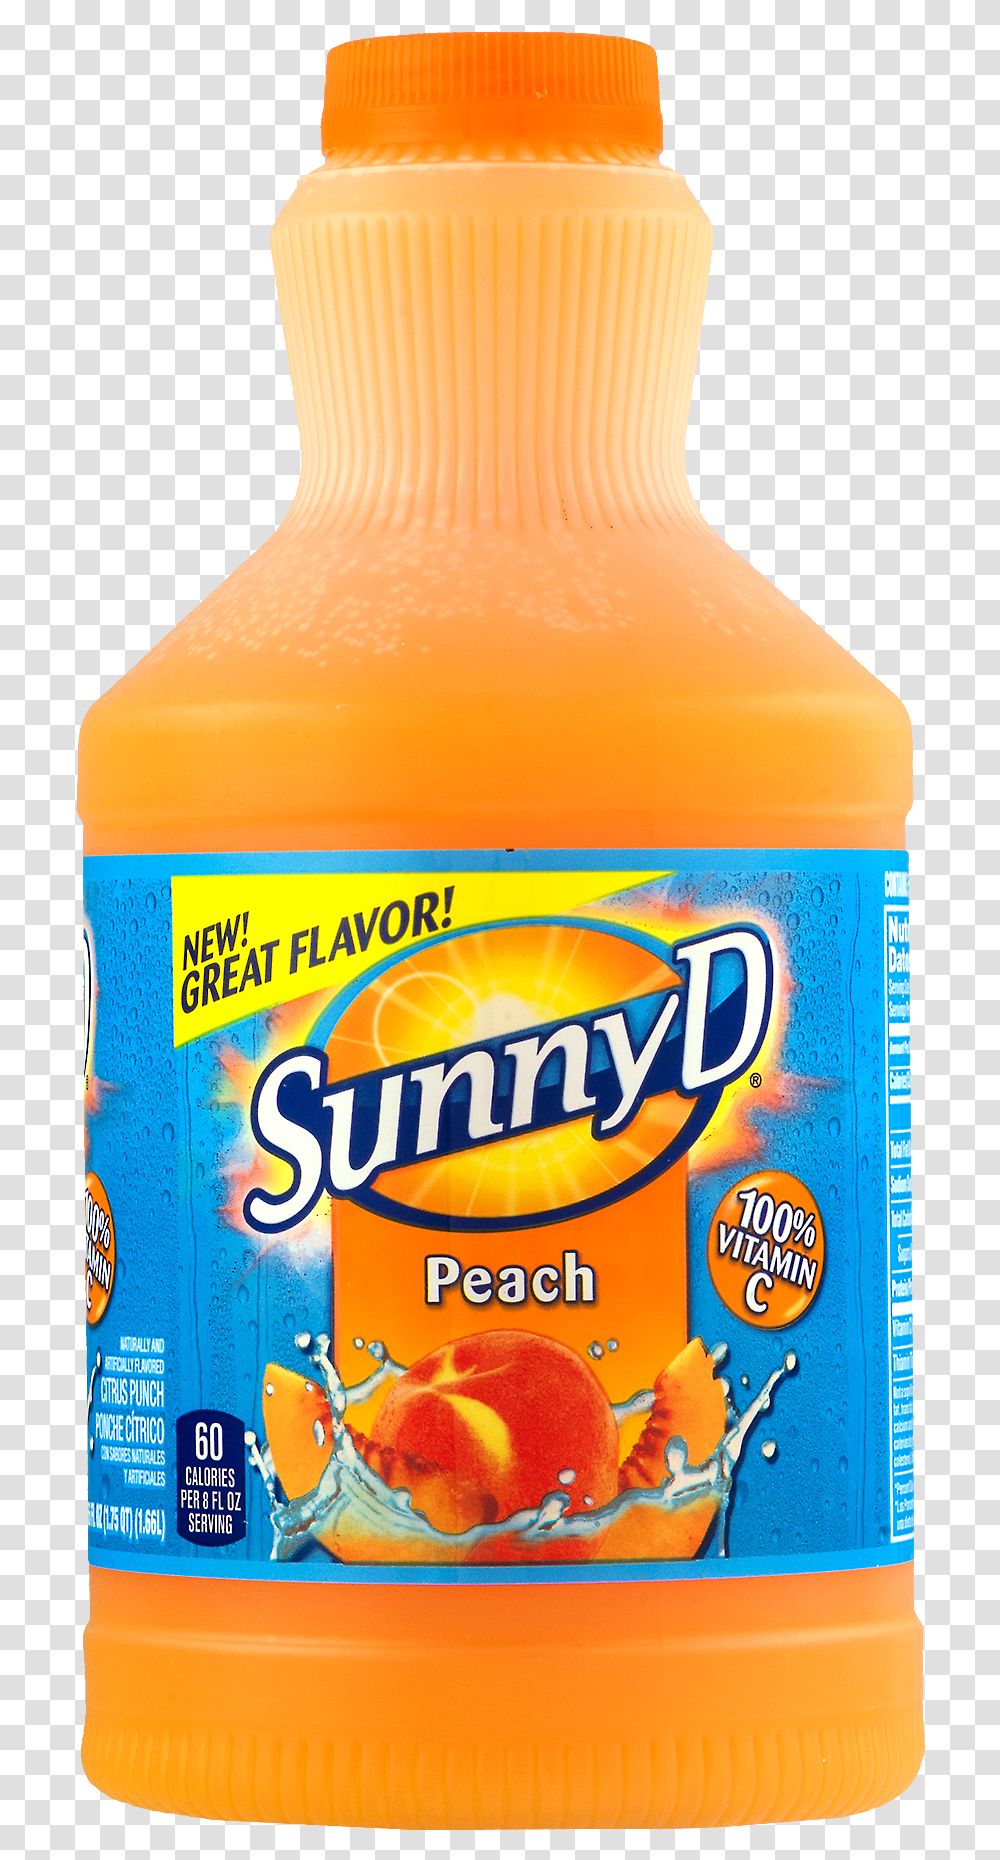 Sunny D Flavored Citrus Punch Orange Sunnyd Logo, Juice, Beverage, Drink, Orange Juice Transparent Png